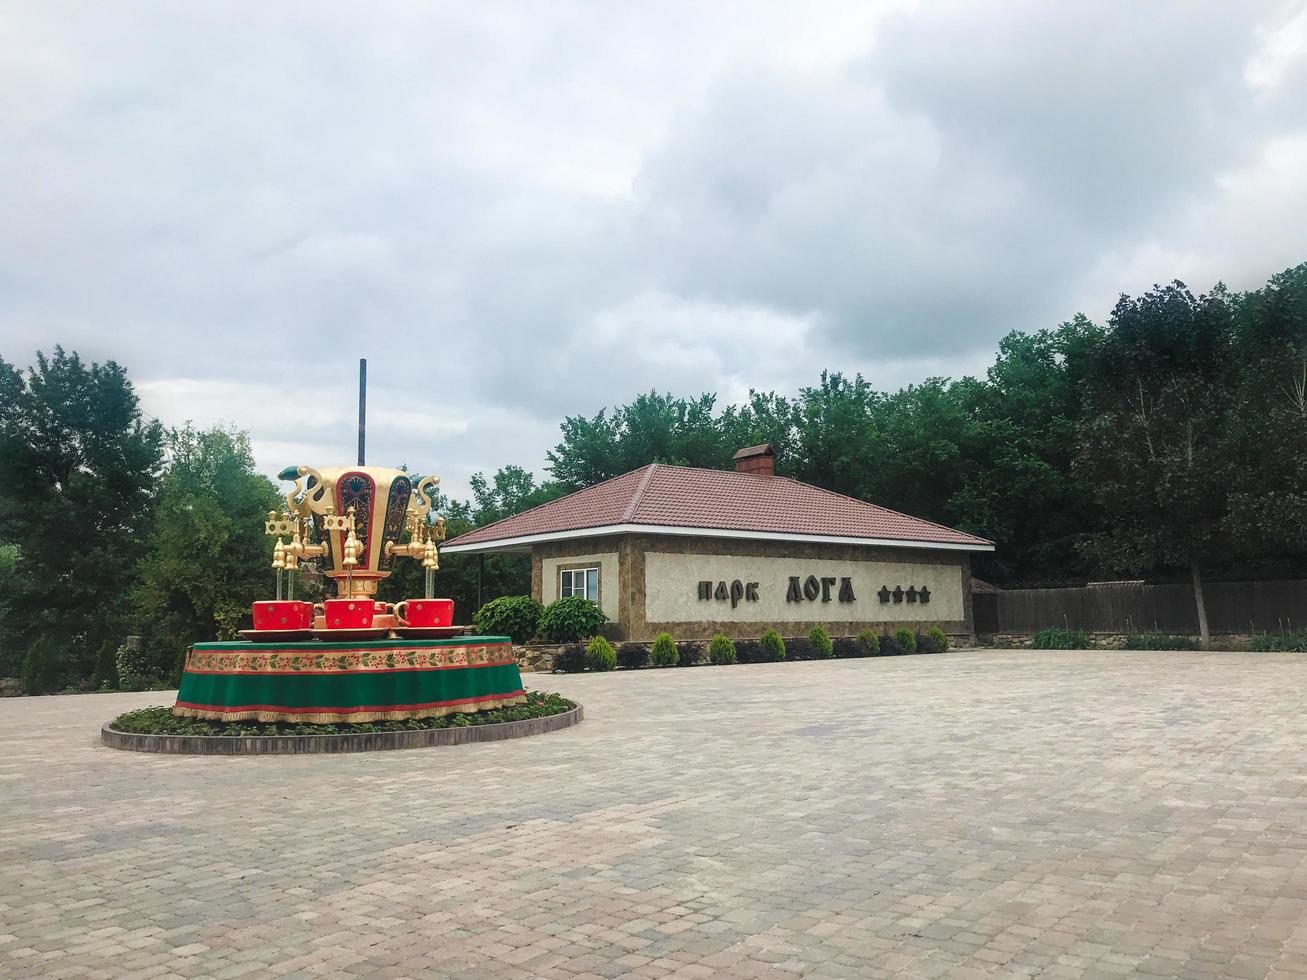 città di kamensk, russia, 2021 - fontana nel parco loga foto